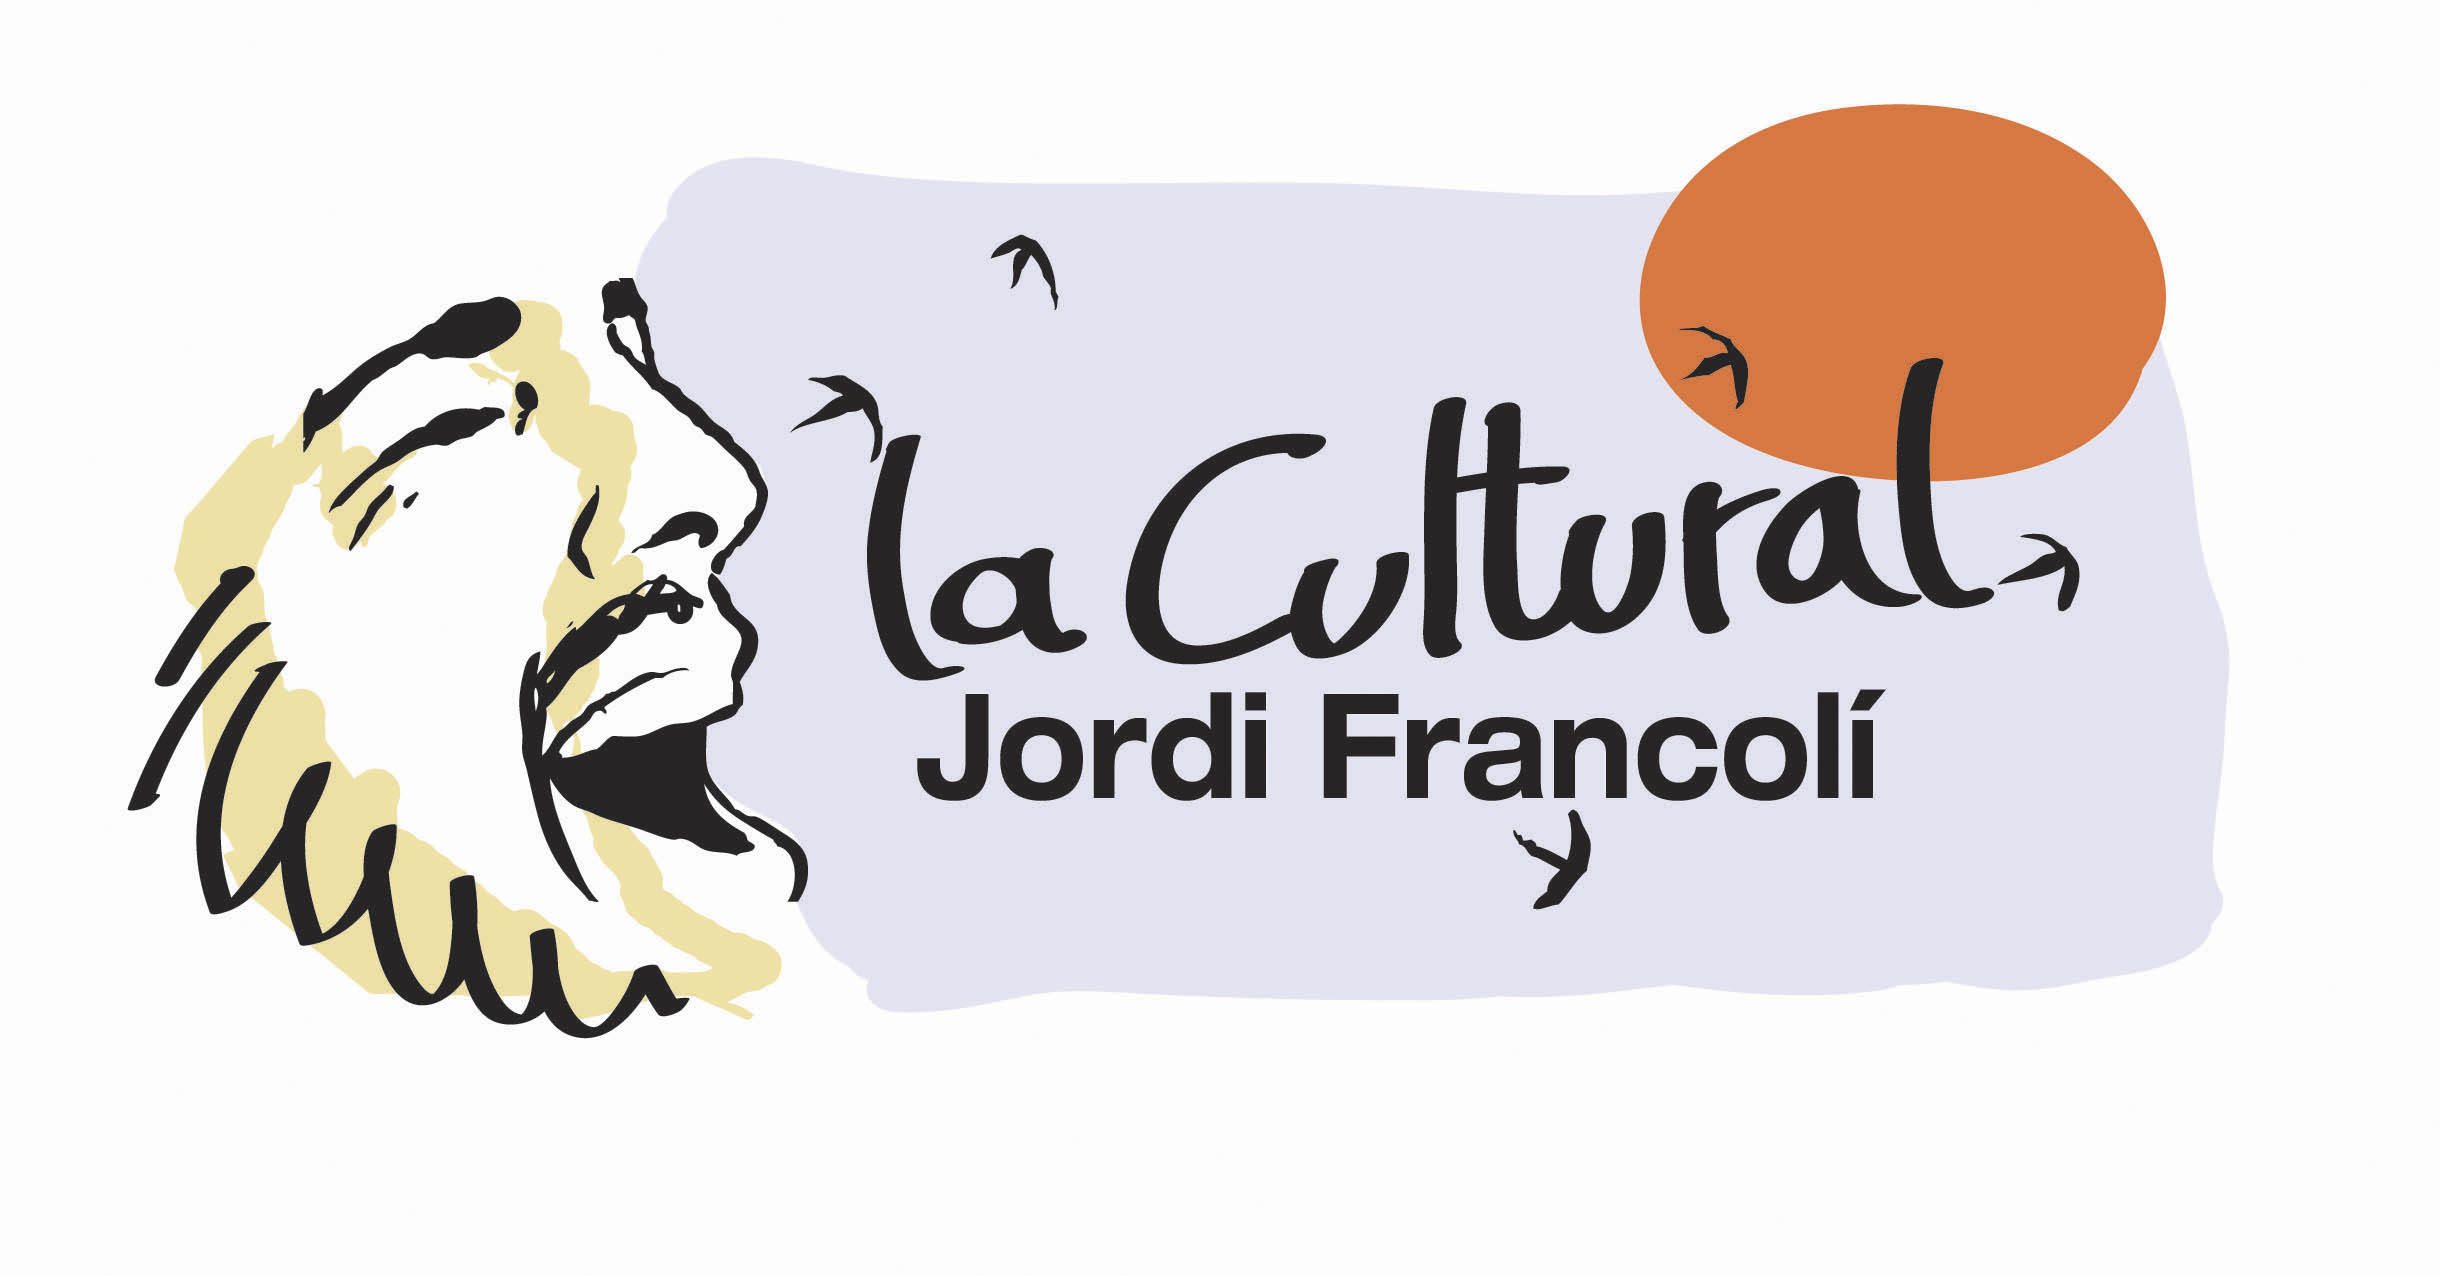 La Cultural Jordi Francolí